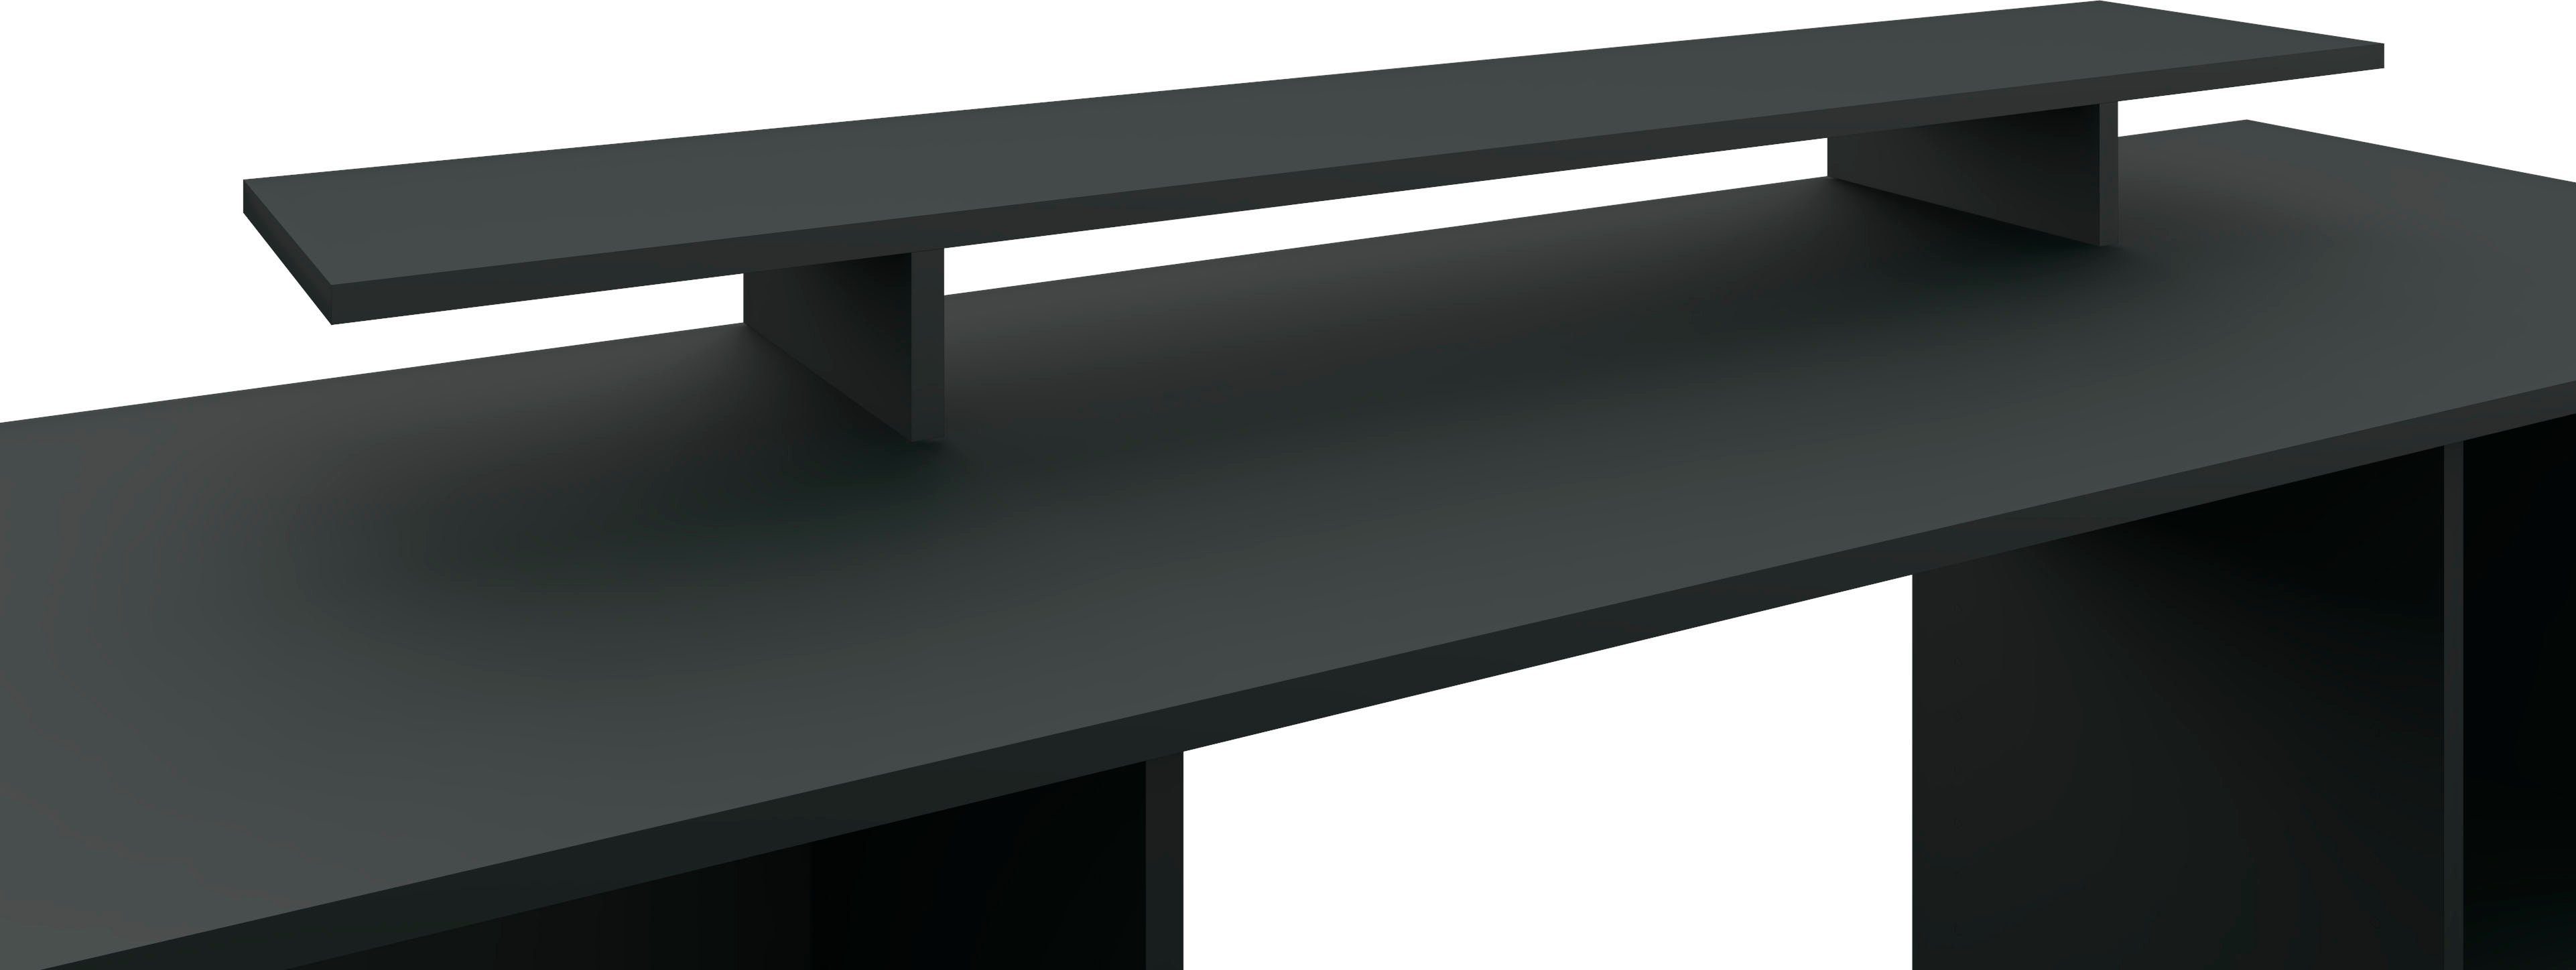 borchardt Möbel Schreibtischaufsatz Kai, Monitorständer, Germany in Made modernen Design, im schwarz-matt Bildschirmerhöhung